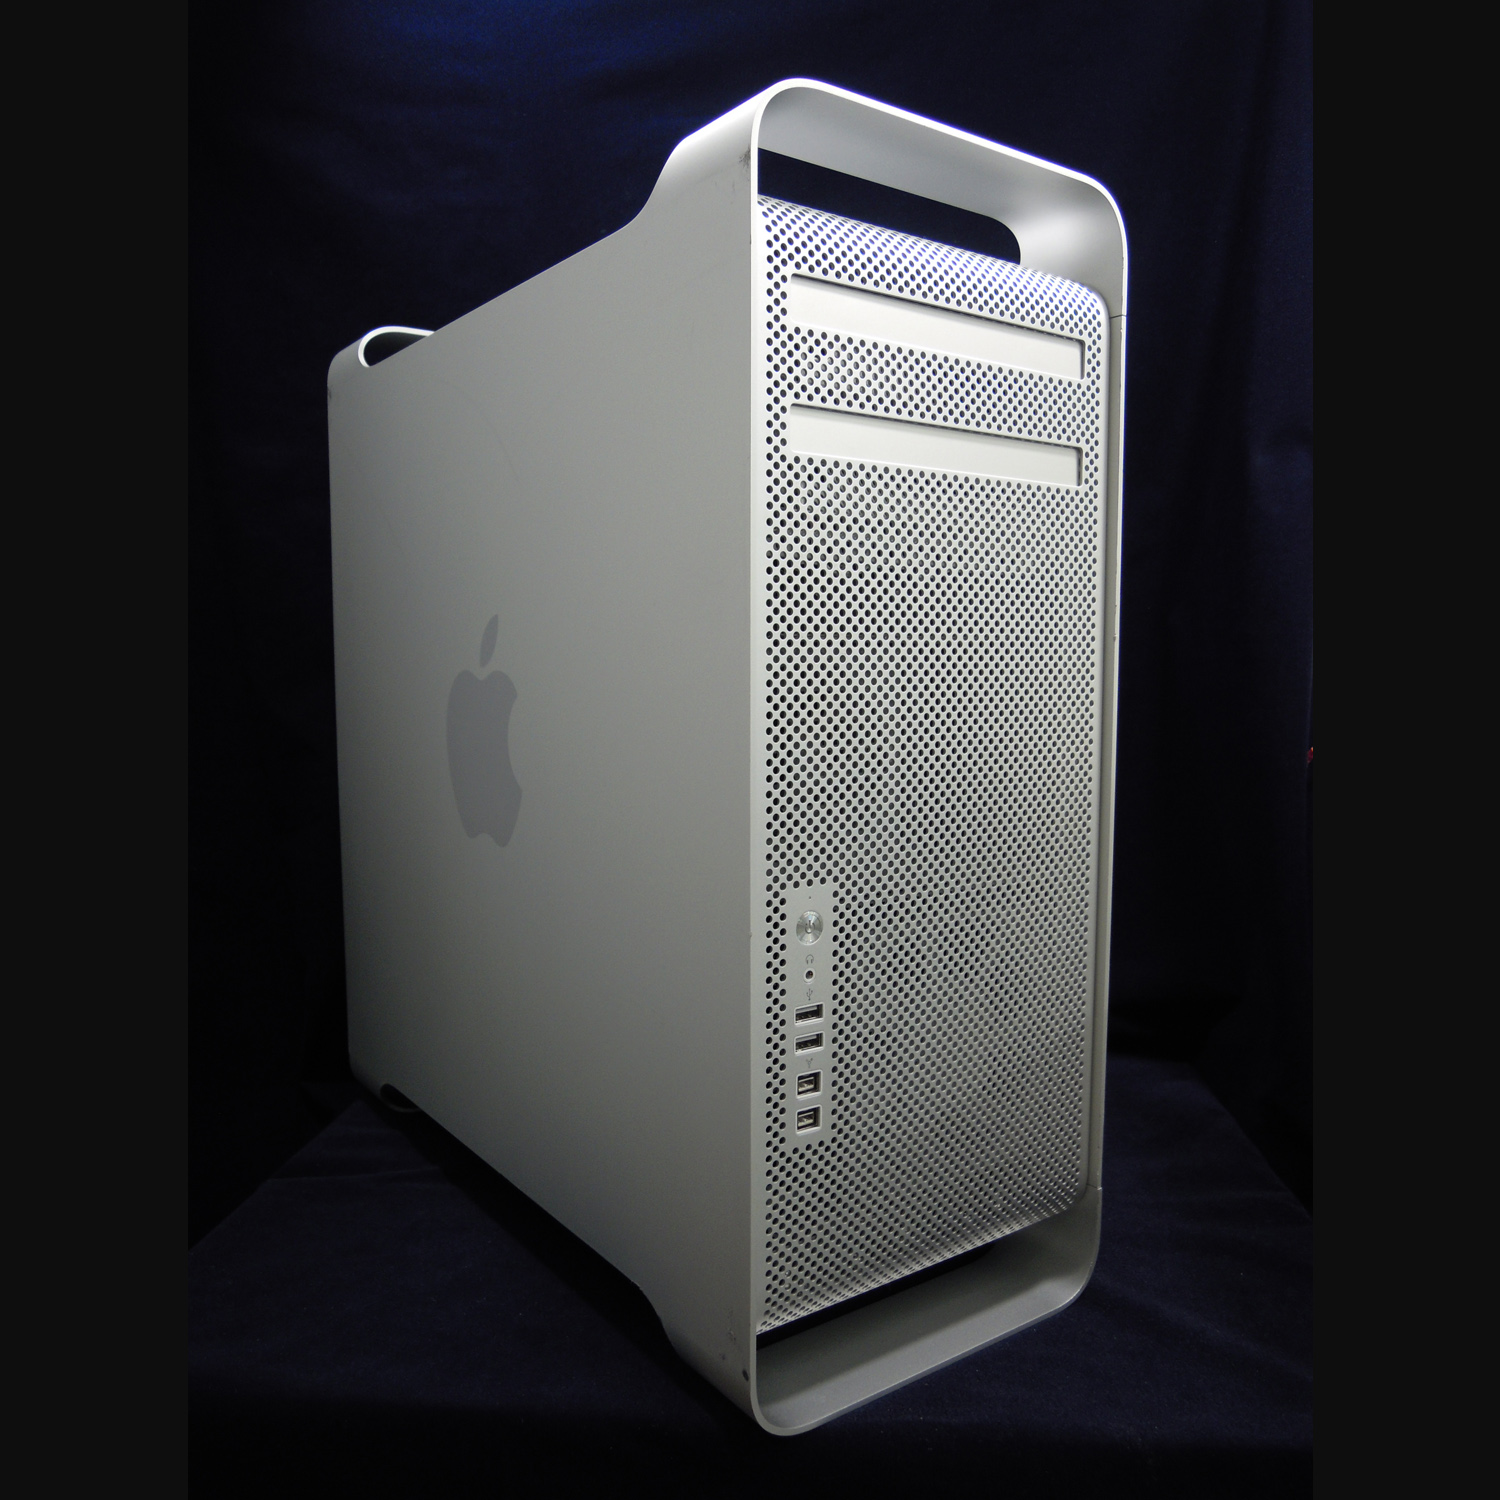 5年目になるデスクトップMacPro 2.4GHz Xeon 2×Quad core (8core) MID2010 の性能と残存価格は